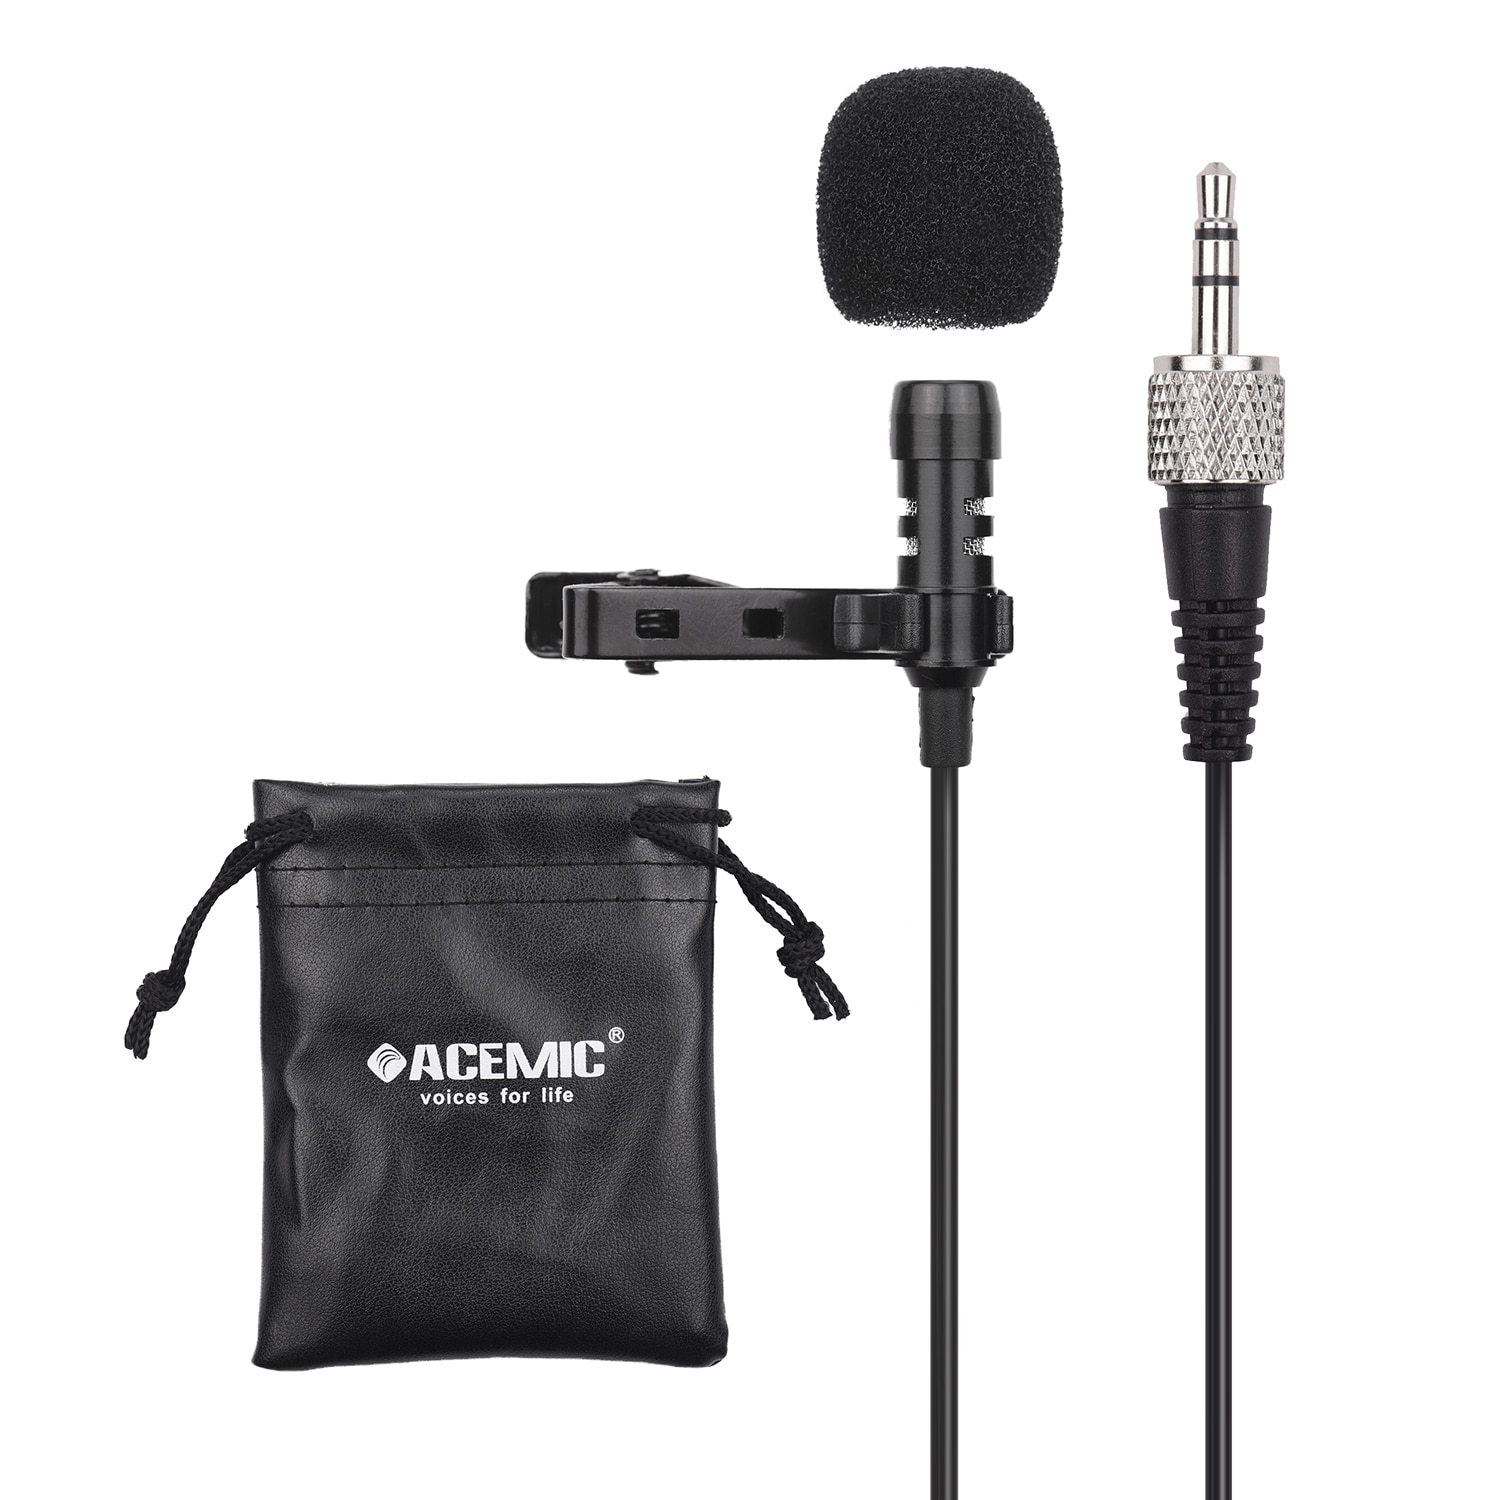 Acemic  m21 clip-on kondensator lavalier mikrofon mic fotografering 3.5mm trs stik 1m kabel med bæretaske til sony  d11 d12